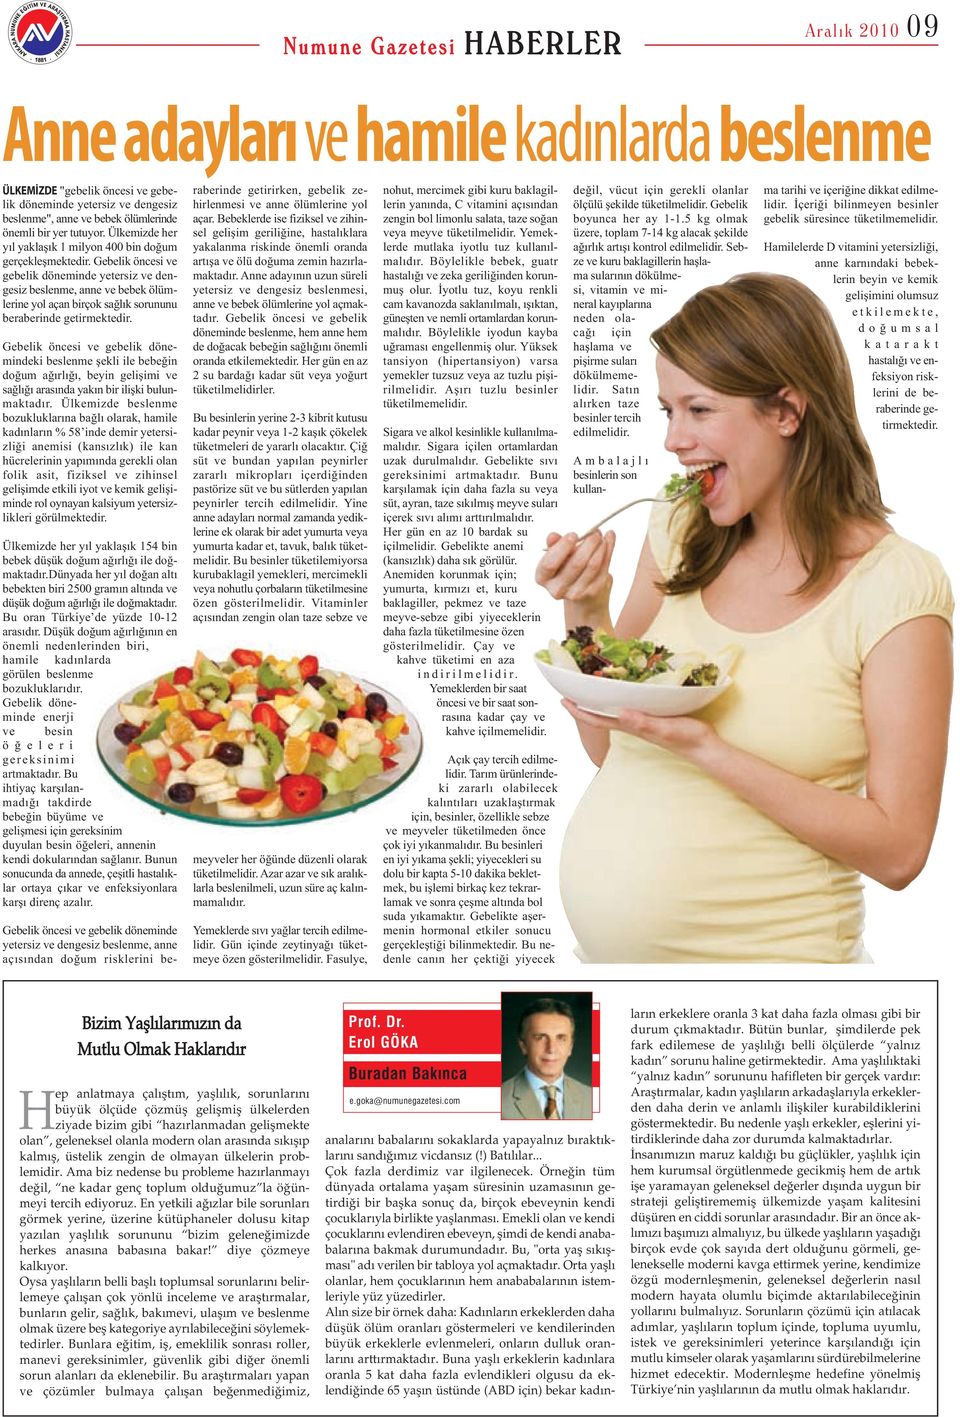 Gebelik öncesi ve gebelik döneminde yetersiz ve dengesiz beslenme, anne ve bebek ölümlerine yol açan birçok sağlık sorununu beraberinde getirmektedir.